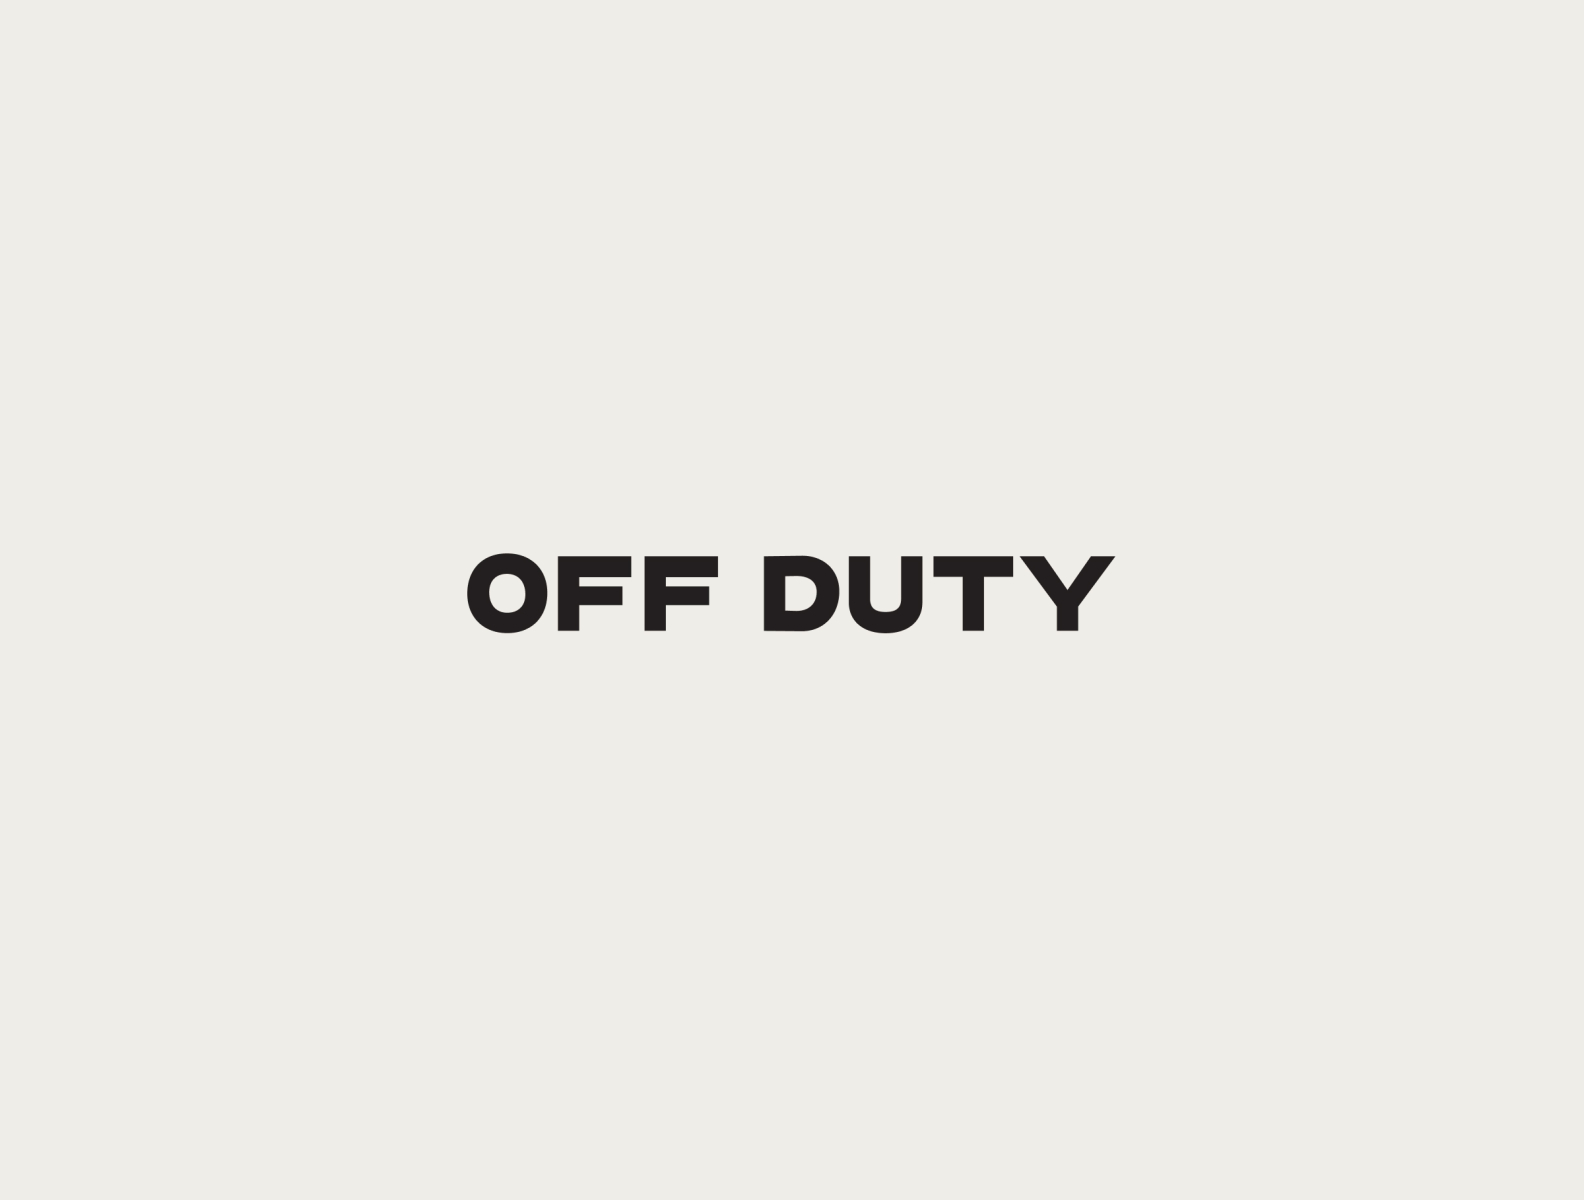 OFF DUTY by Chelsea LaSalle on Dribbble